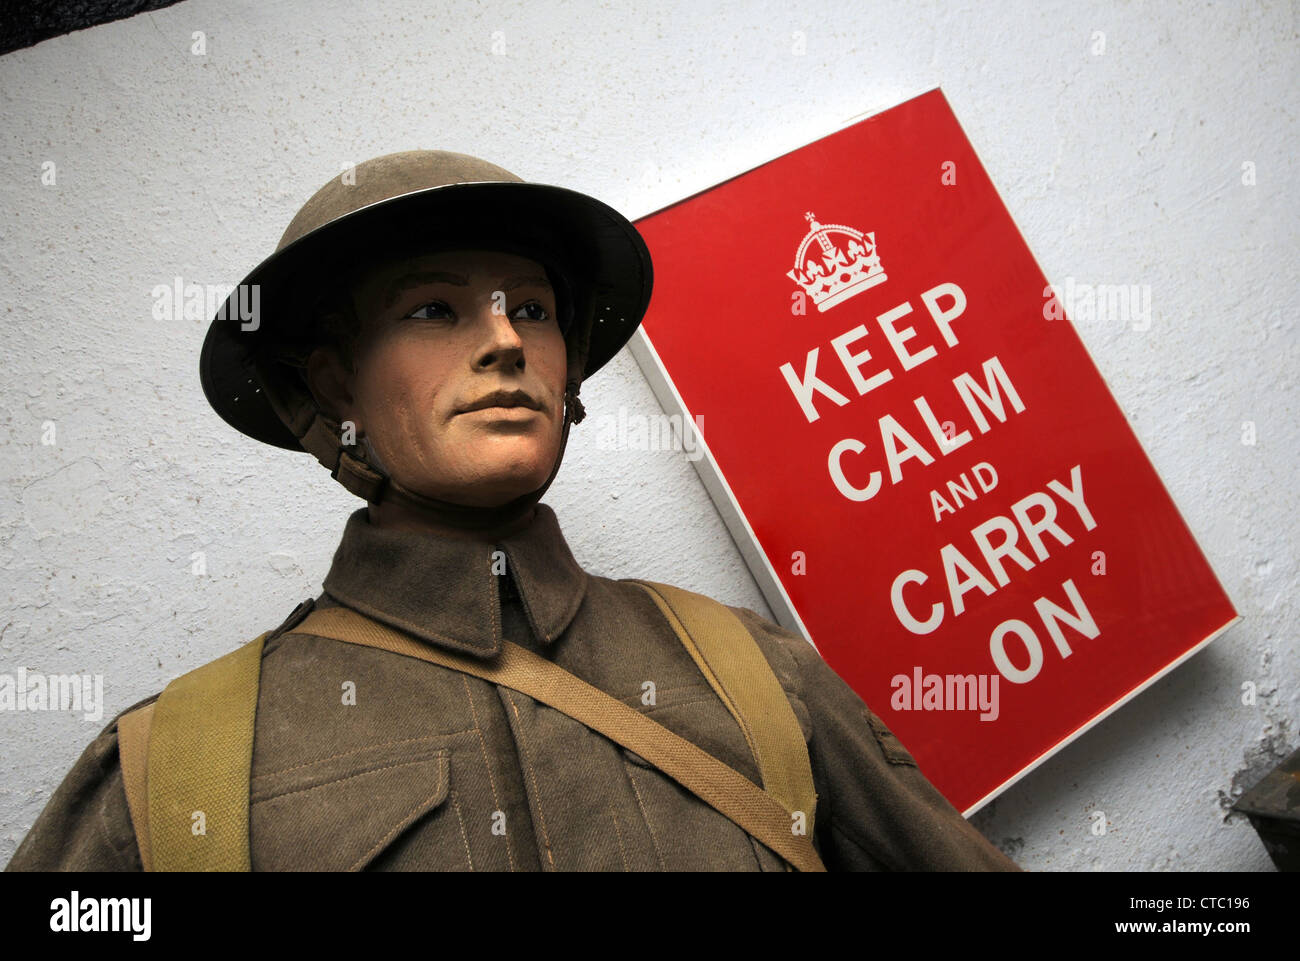 Keep calm and carry on affiche un modèle d'un soldat britannique Banque D'Images